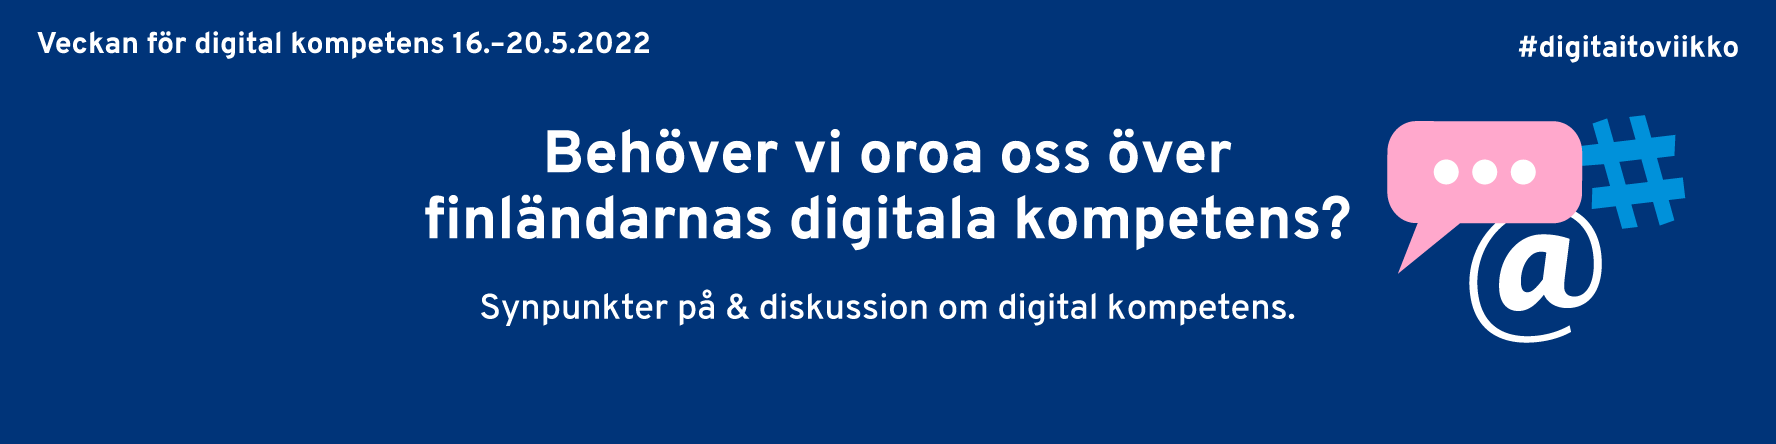 Behöver vi oroa oss över finländarnas digitala kompetens? Synpunkter på och diskussion om digital kompetens. Veckan för digital kompetens 16.-20.5.2022. #digitaitoviikko